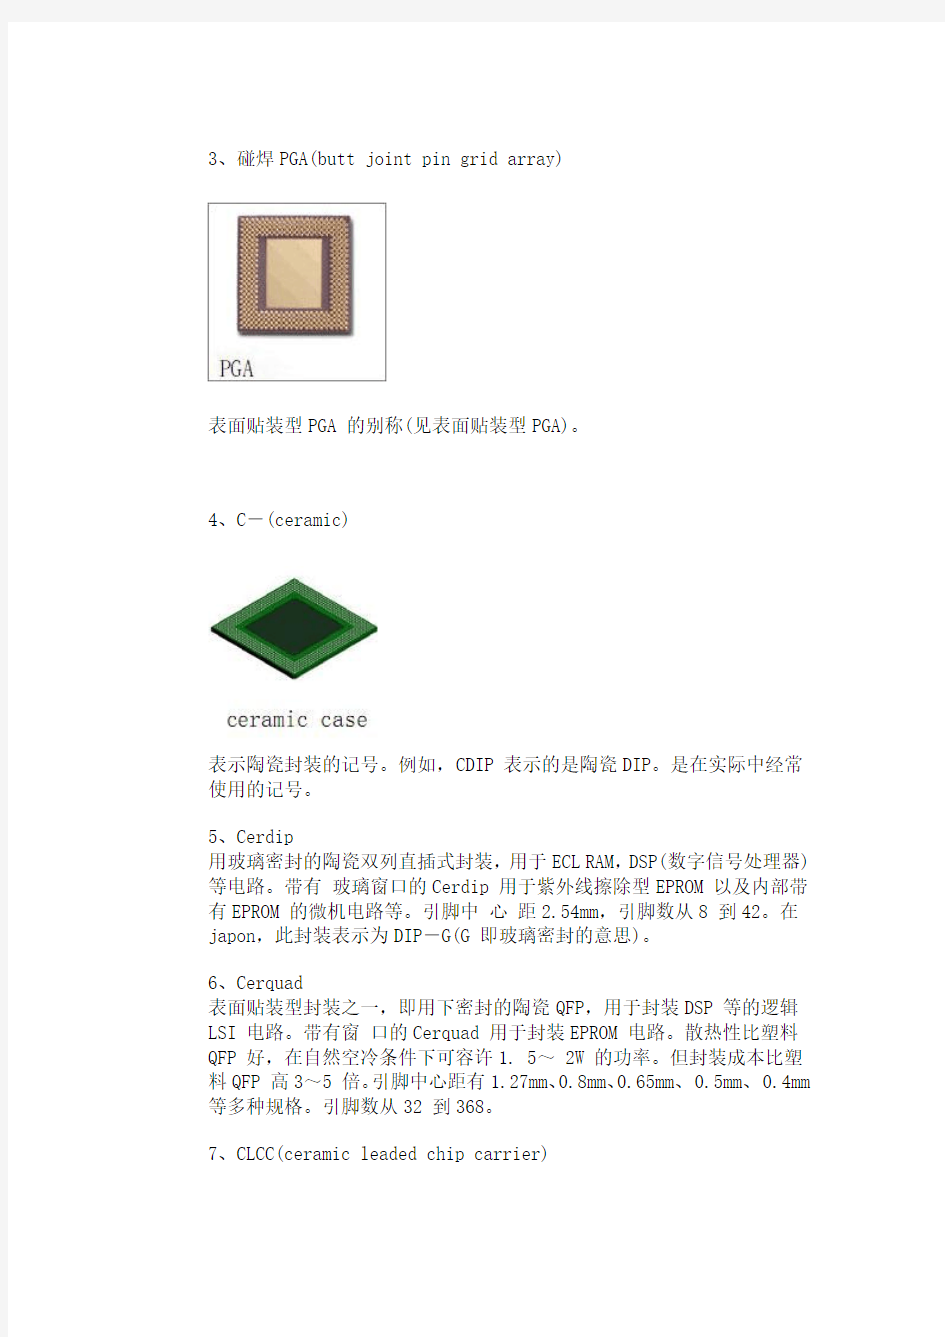 印刷电路板芯片封装分类